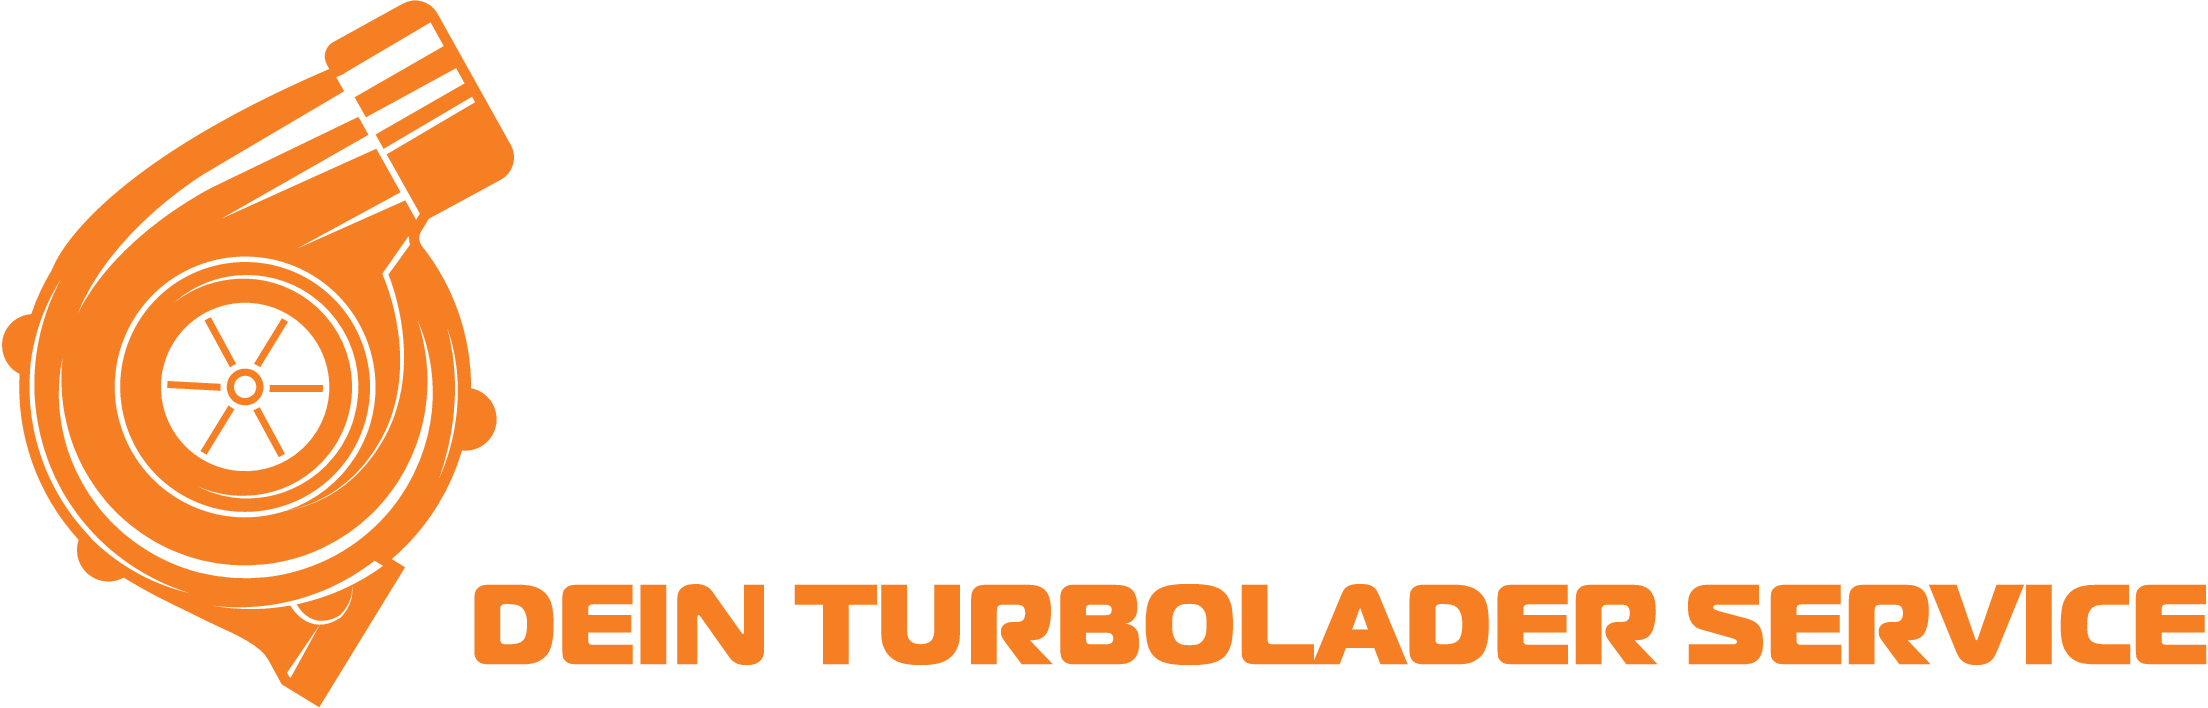 Turbocheck_Berlin_Turboladerinstandsetzung